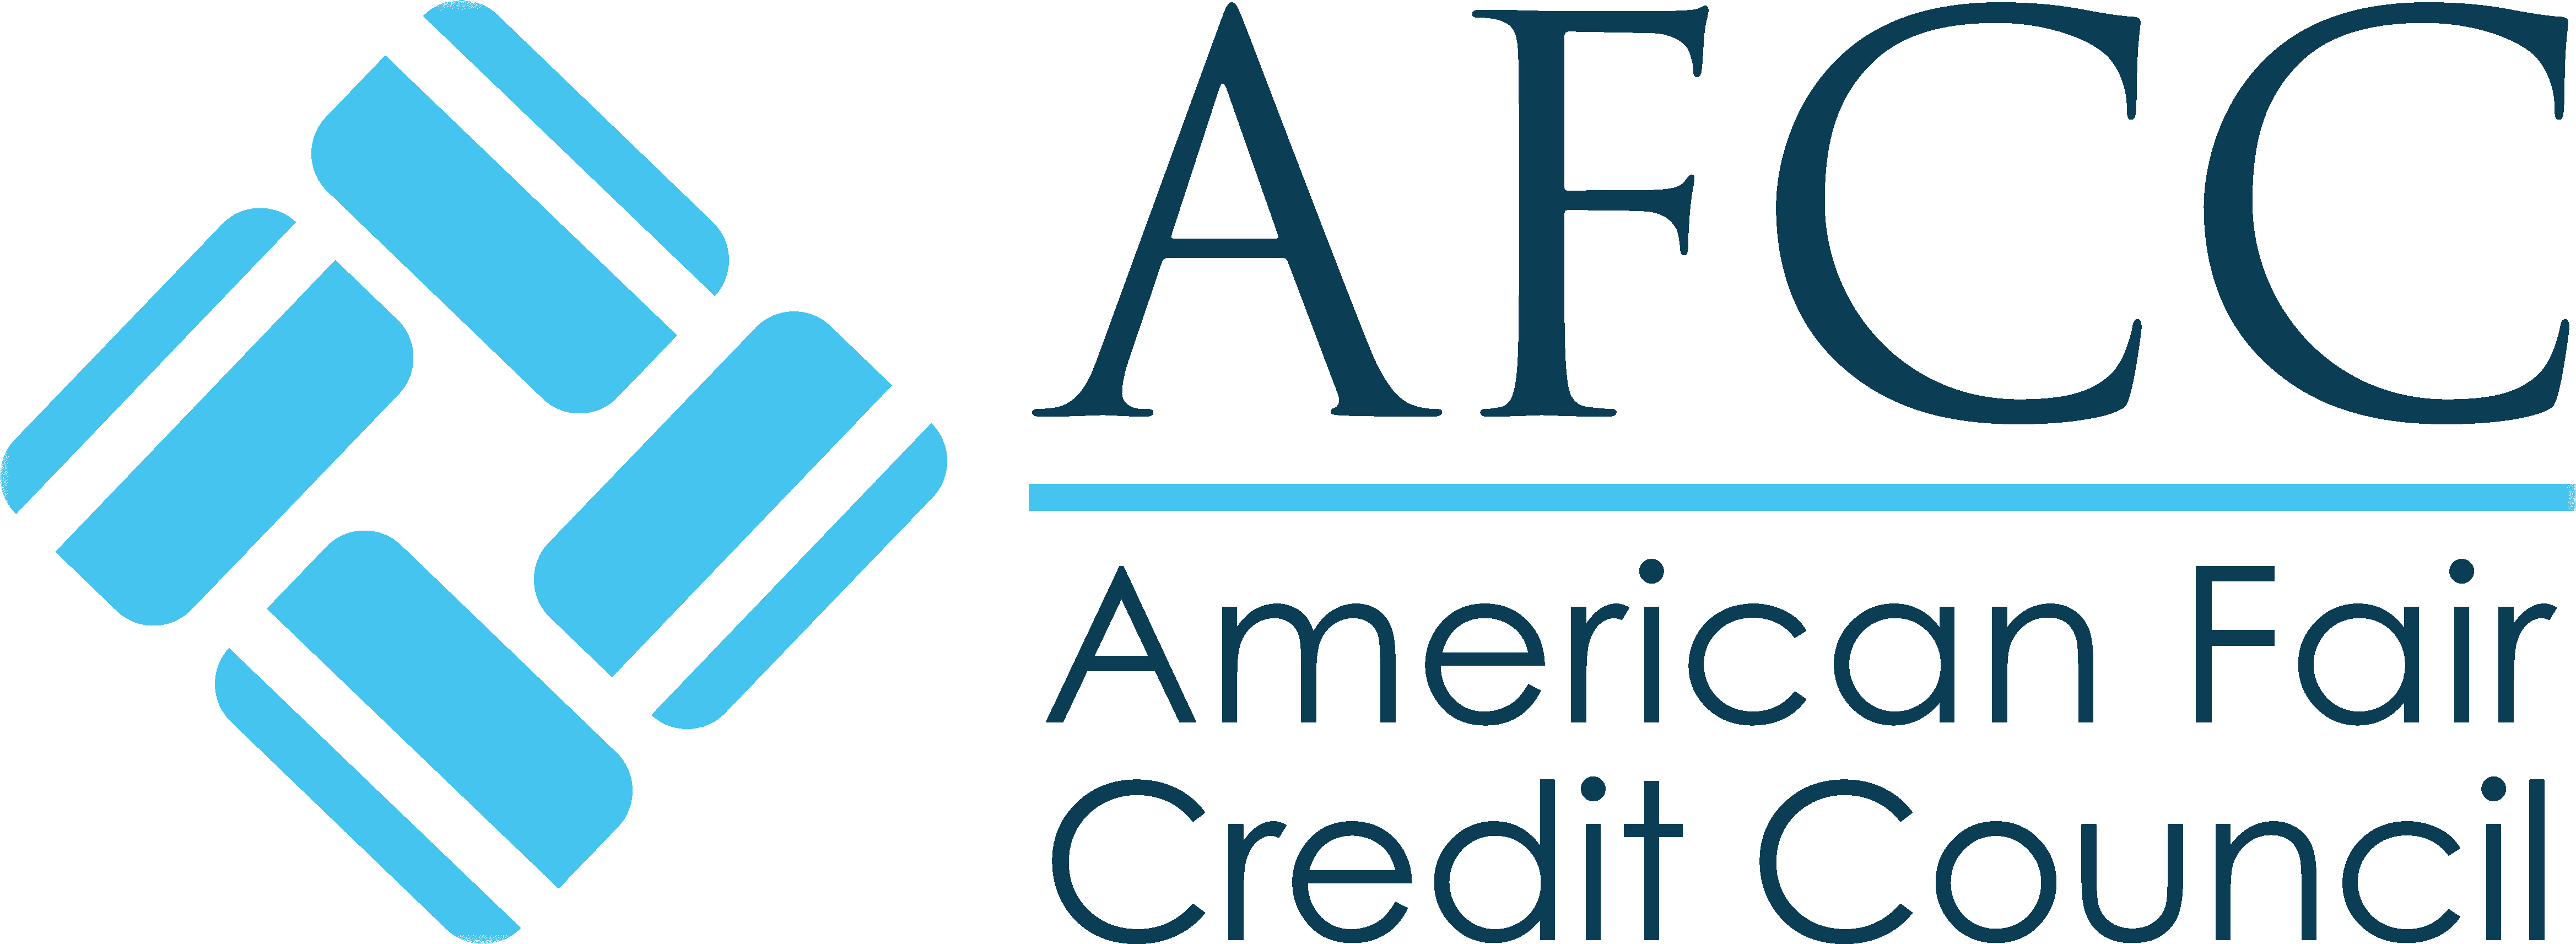 afcc-logo-header